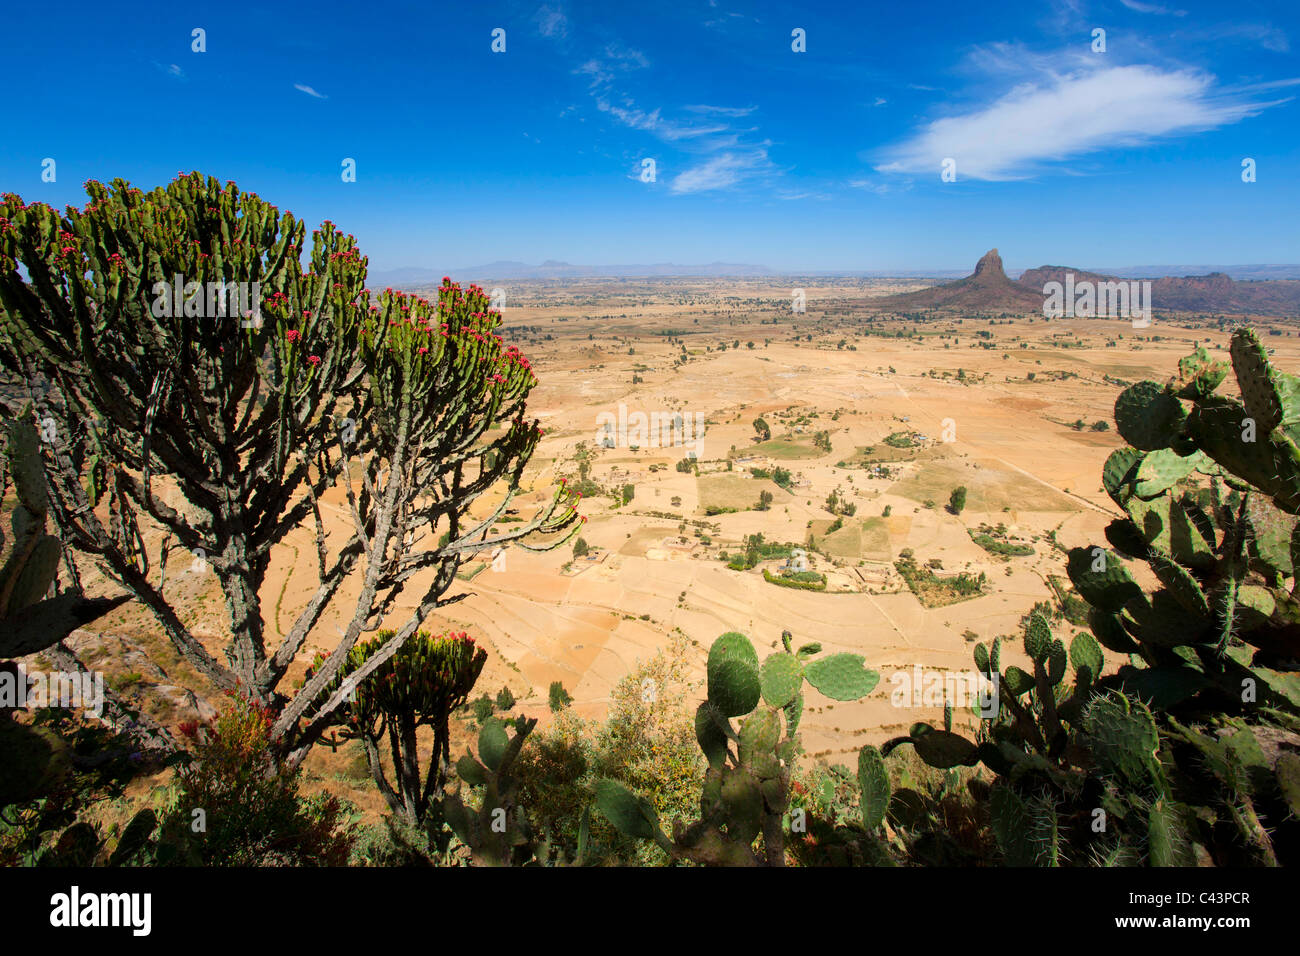 Gerealta, Afrique, Ethiopie, highland, view point, cactus Banque D'Images